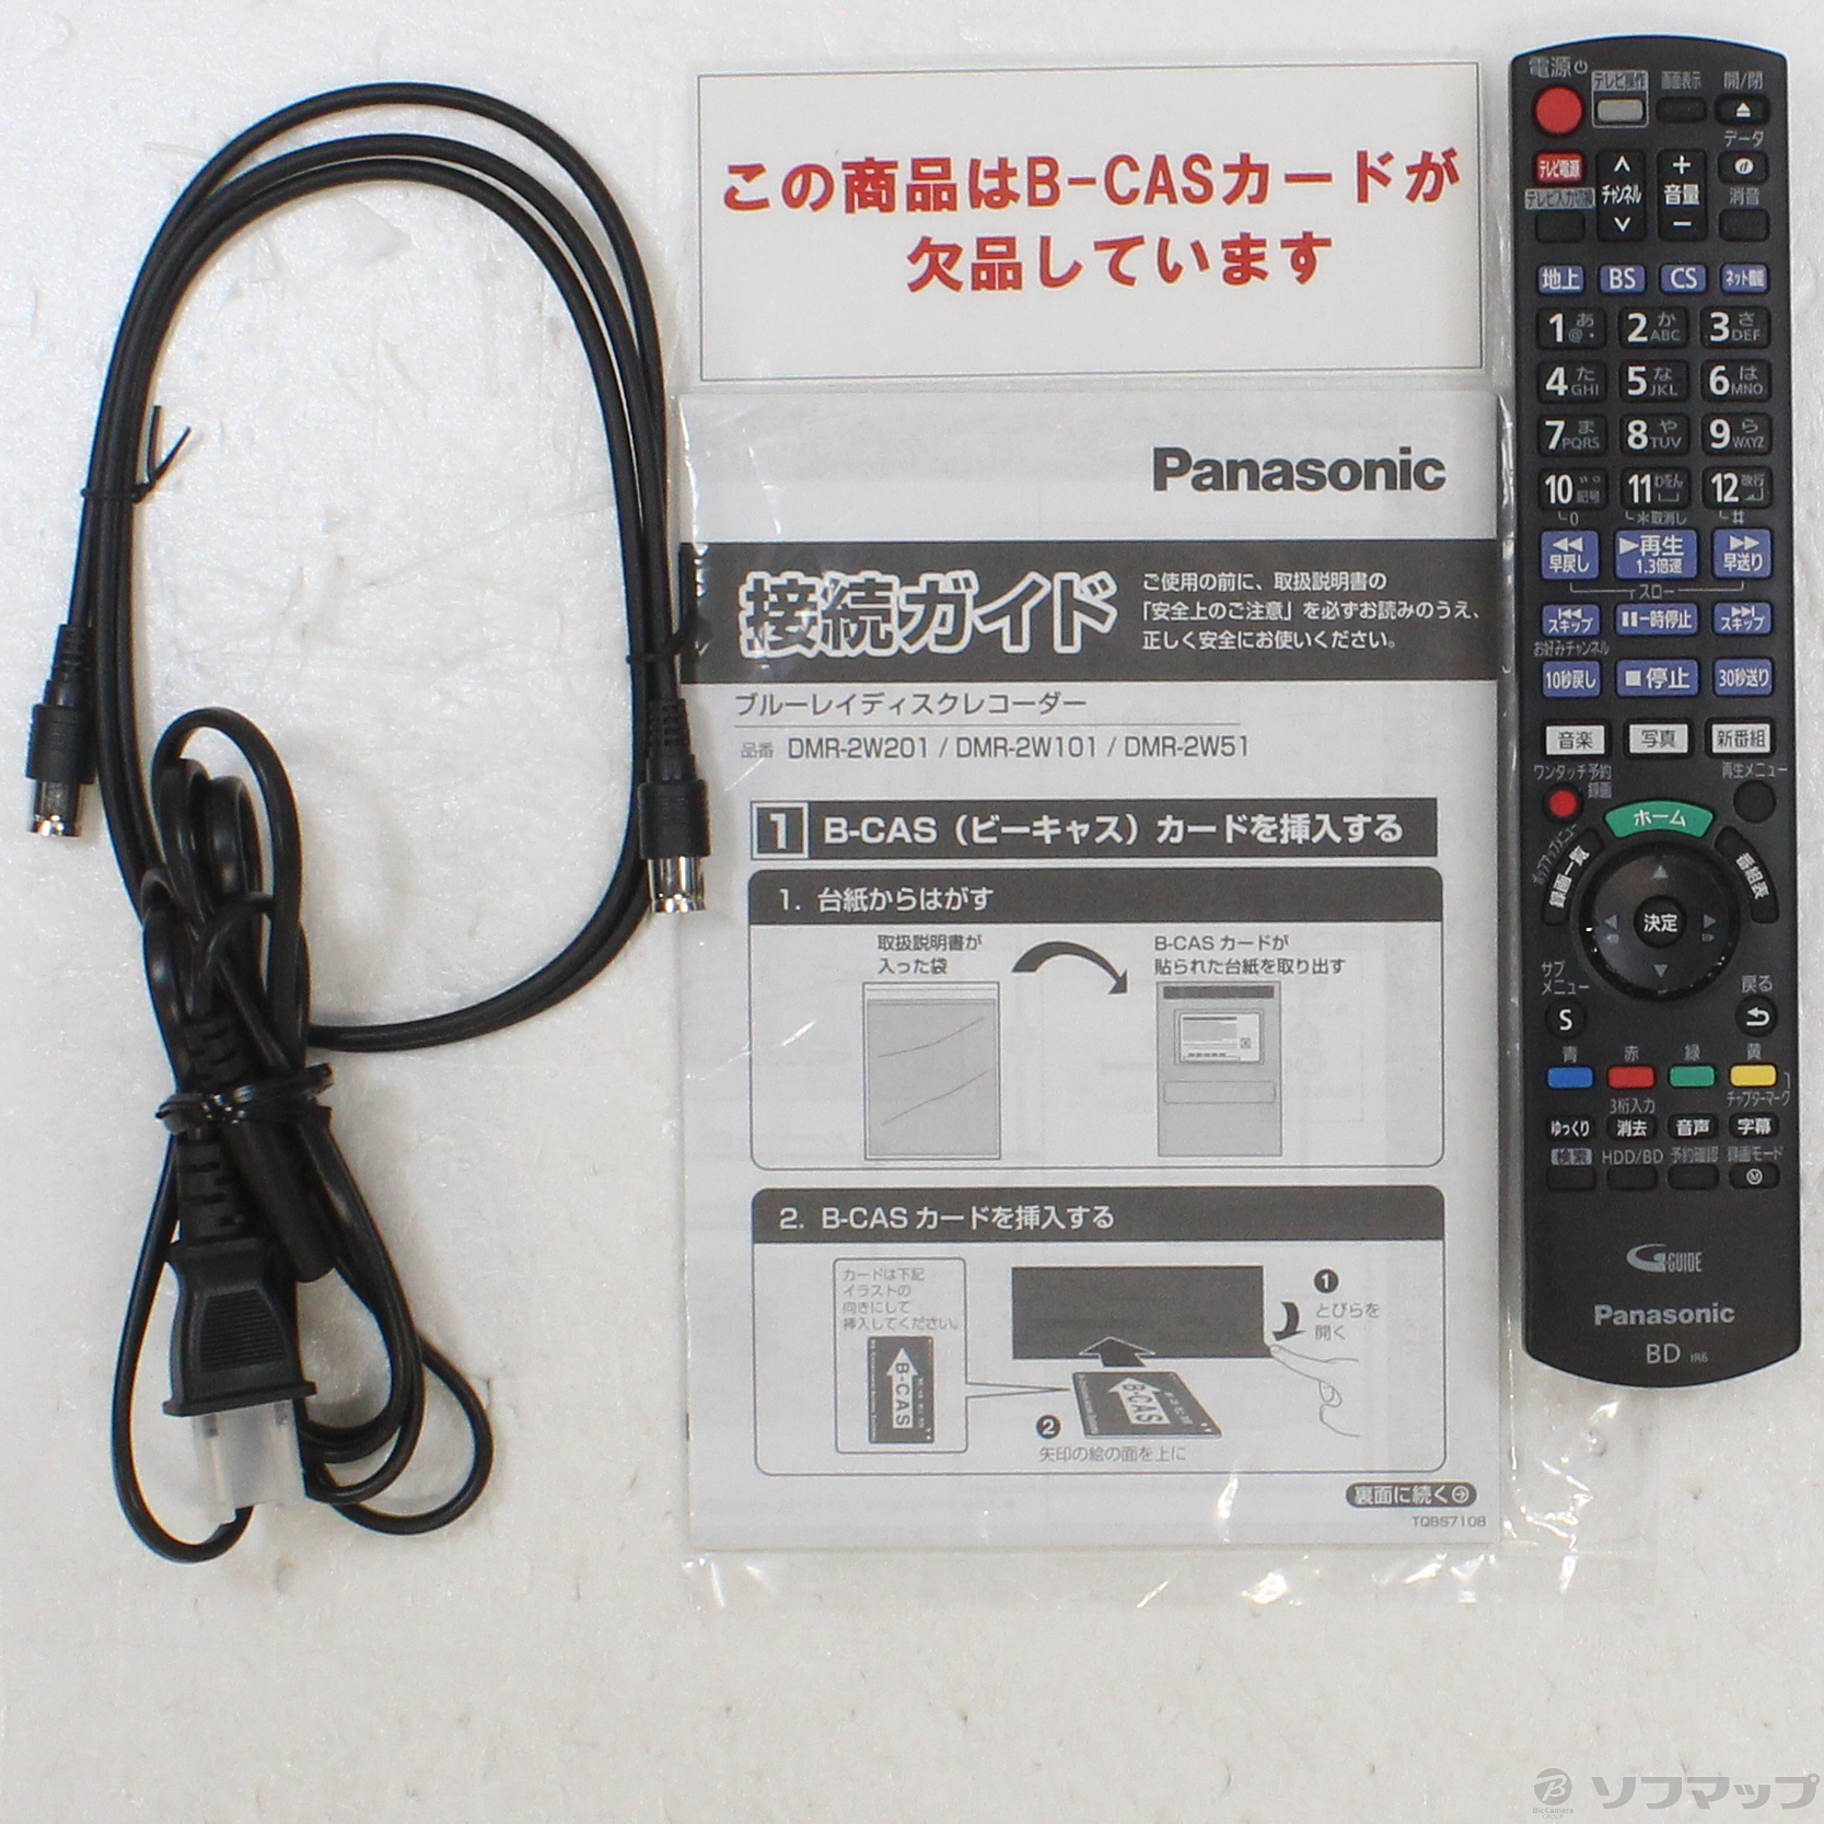 中古品 panasonic Blu-rayレコーダー DMR-2W101 - テレビ/映像機器